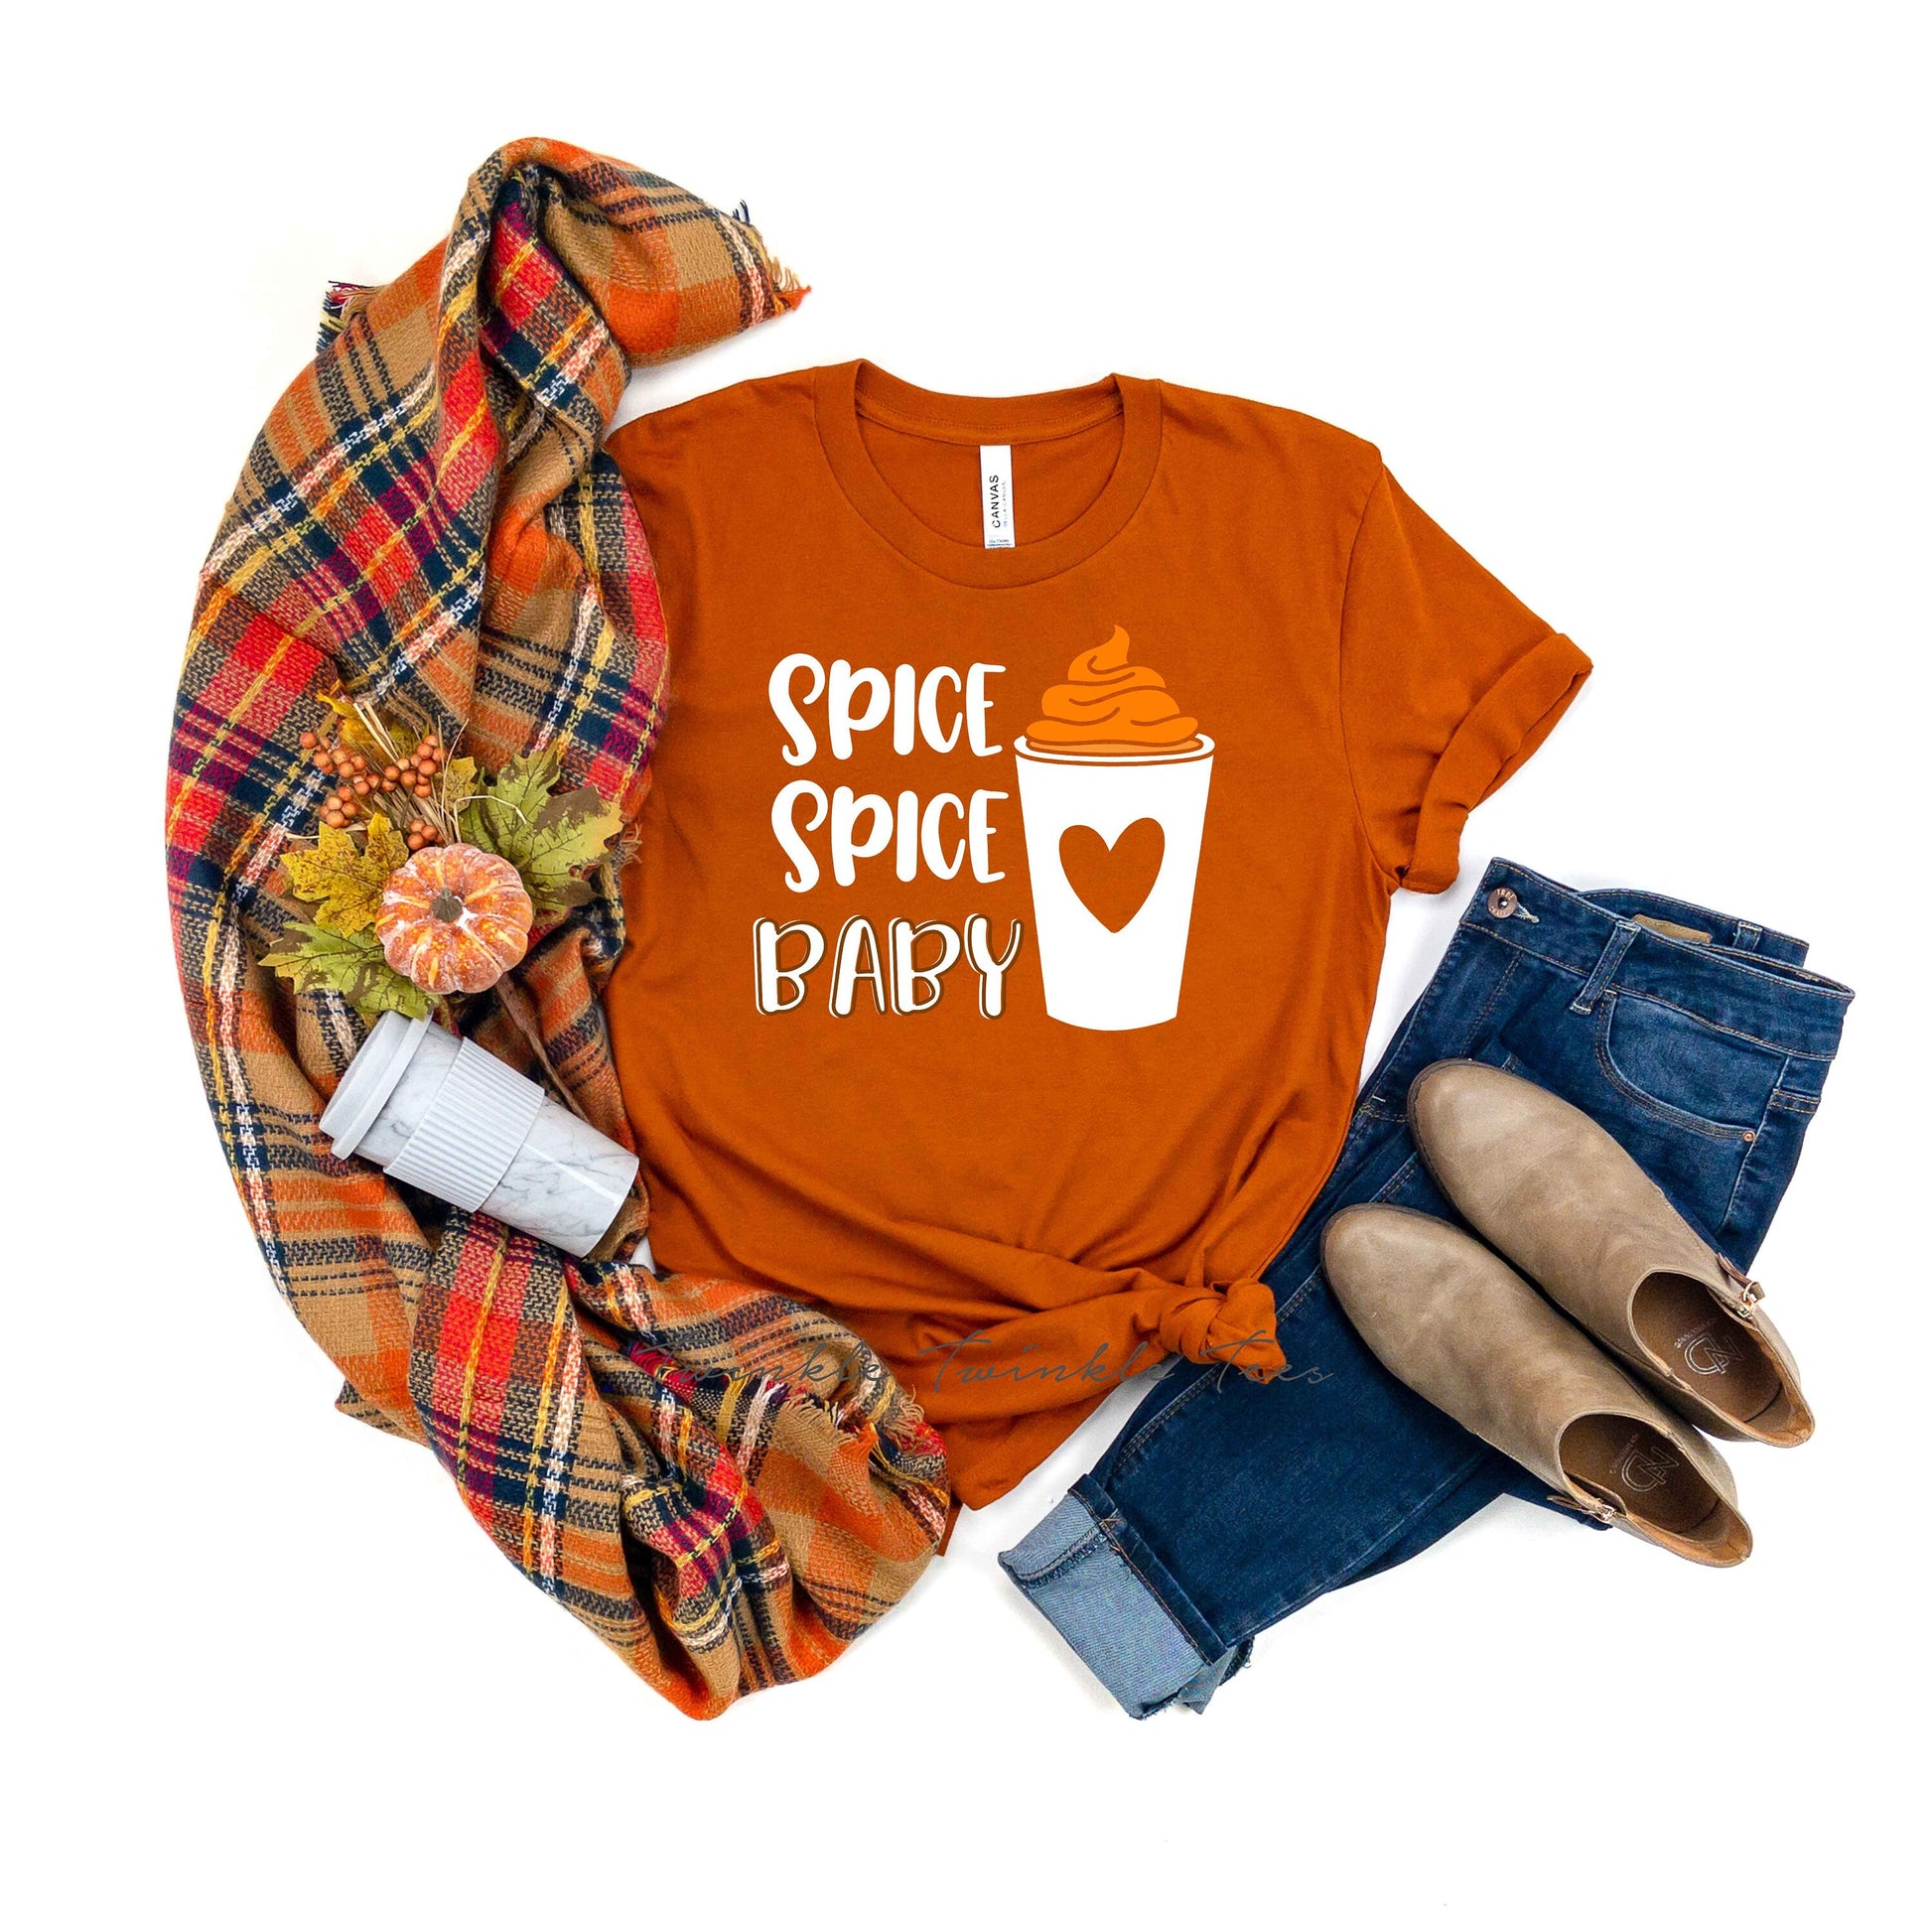 Spice Spice Baby unisex t-shirt -  Pumpkin Spice Shirt - Autumn Shirt - Womens Fall Shirt - Pumpkin Spice Addict